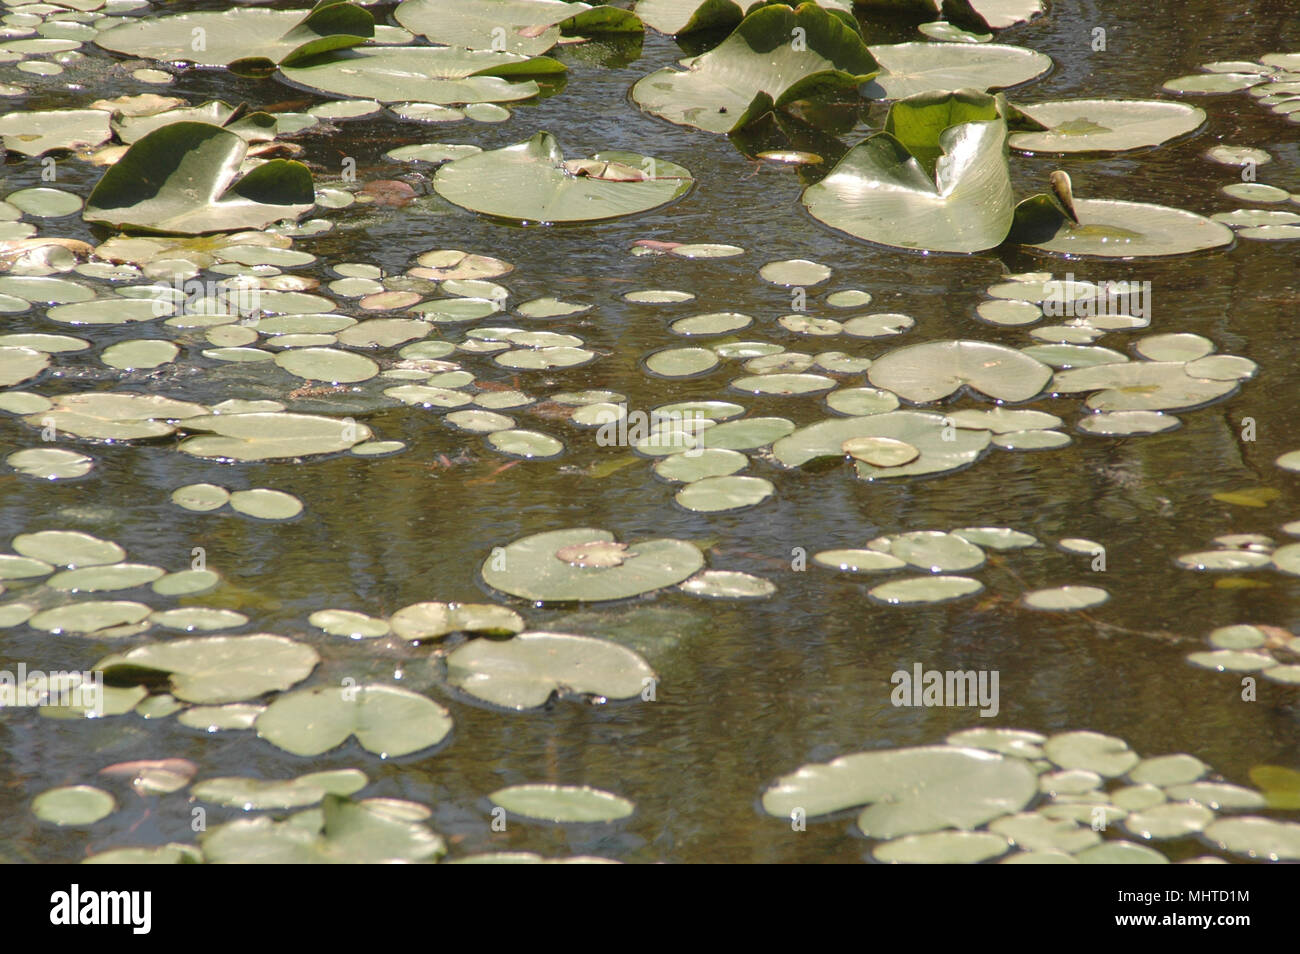 Winterharte Seerose Kolonien bieten Lebensraum für Fische, Filter und Anreichern das Wasser und helfen, das Wasser Temperatur regulieren. Stockfoto